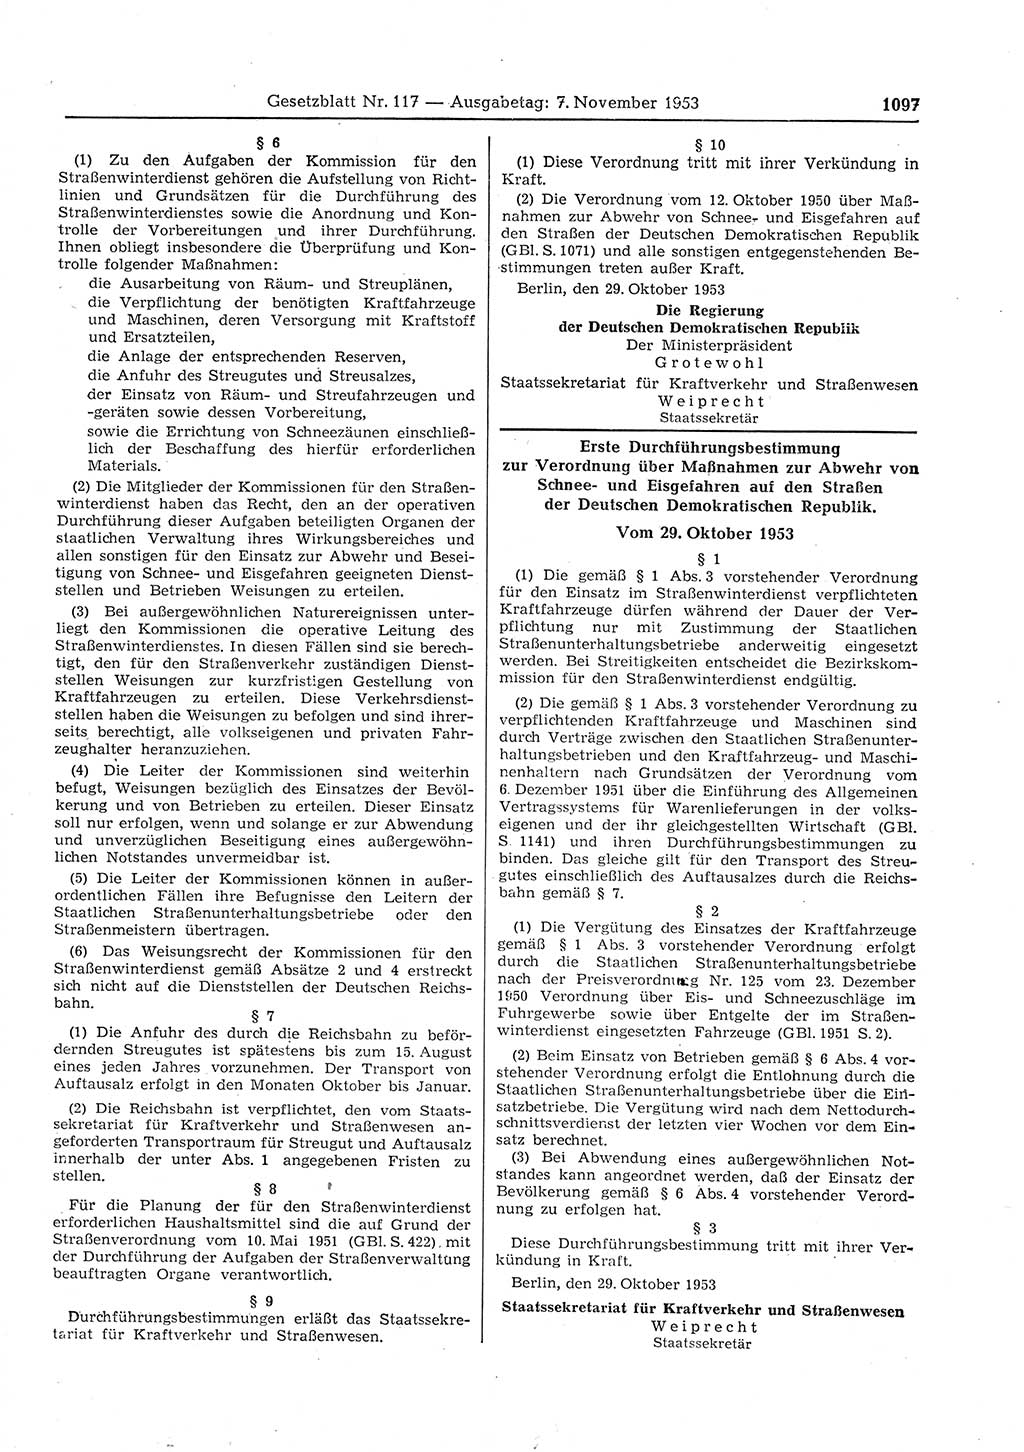 Gesetzblatt (GBl.) der Deutschen Demokratischen Republik (DDR) 1953, Seite 1097 (GBl. DDR 1953, S. 1097)